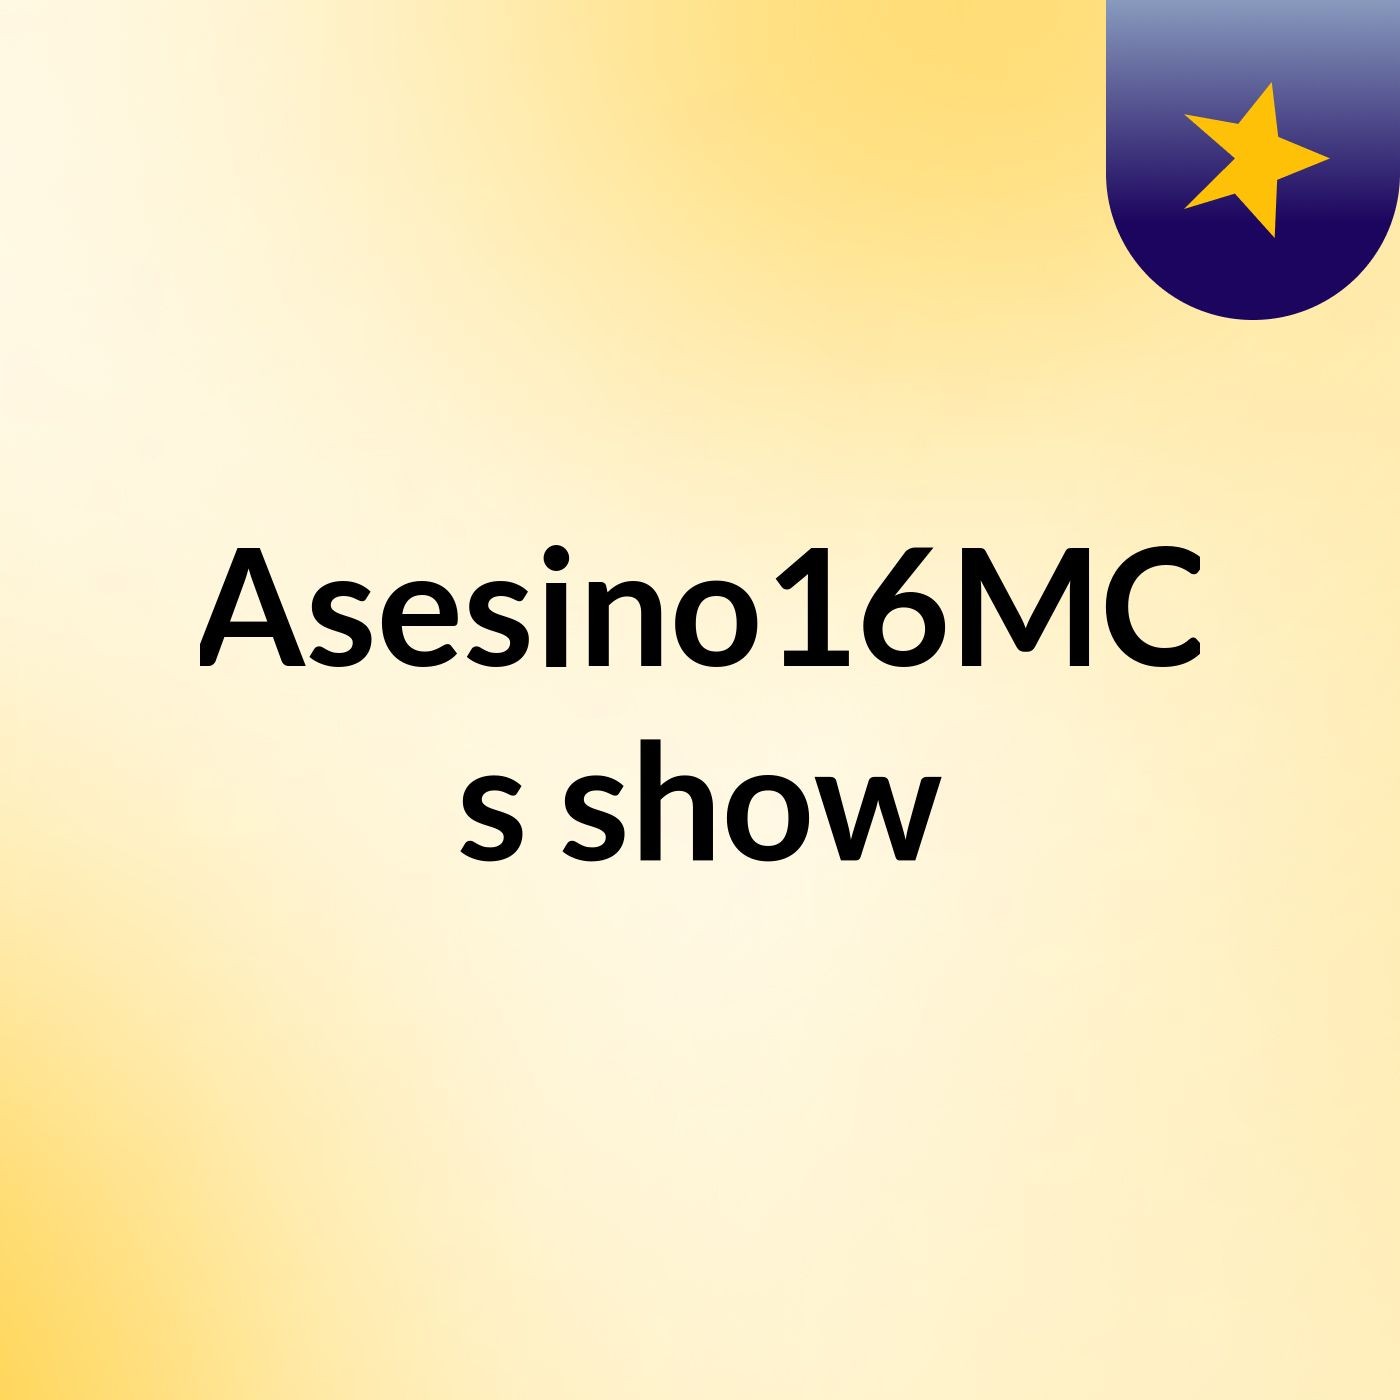 Asesino16MC's show